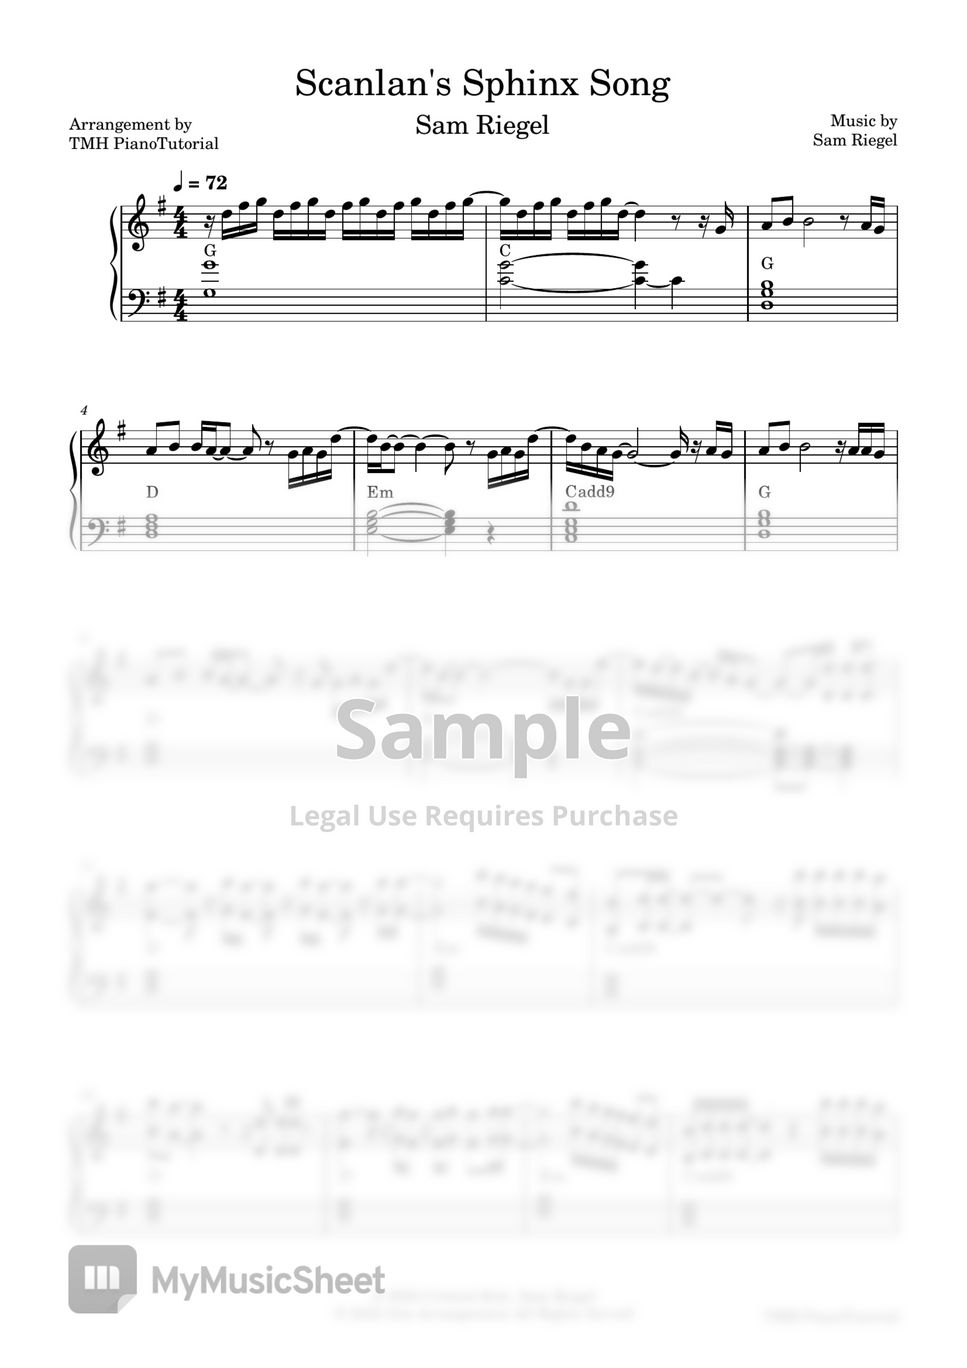 Sam Reigel - Scanlan's Sphinx Song by TMH PianoTutorial